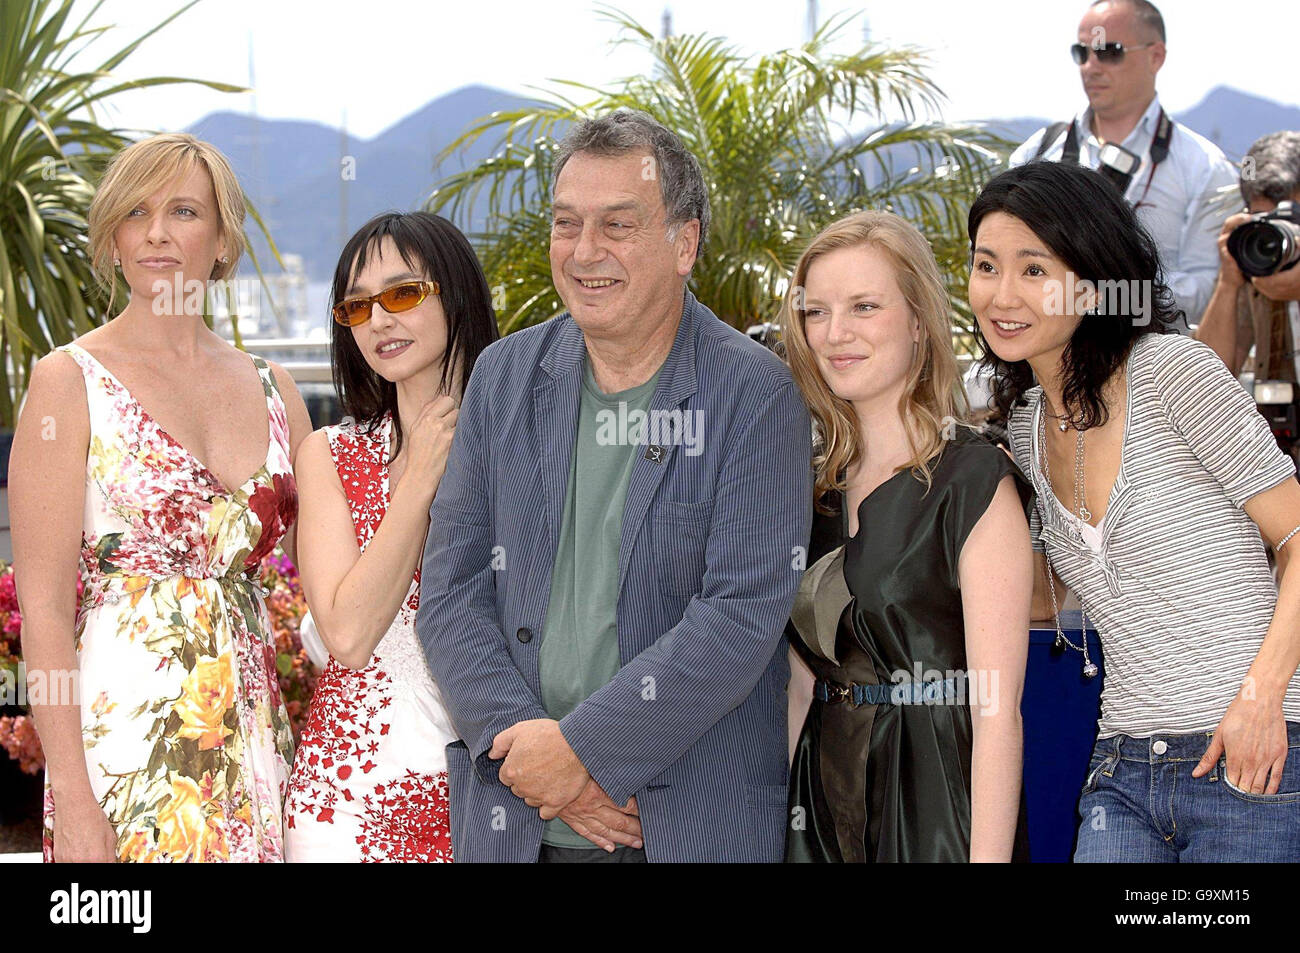 AP OUT: Jurypräsident Stephen Frears und die Jurymitglieder Toni Collette (links), Maria de Medeiros (links), Maggie Cheung (rechts) und Sarah Polley (rechts) posieren für Fotografen beim Palais Du Festival am ersten Tag der 60. Cannes Filmfestspiele in Cannes, Frankreich. Stockfoto